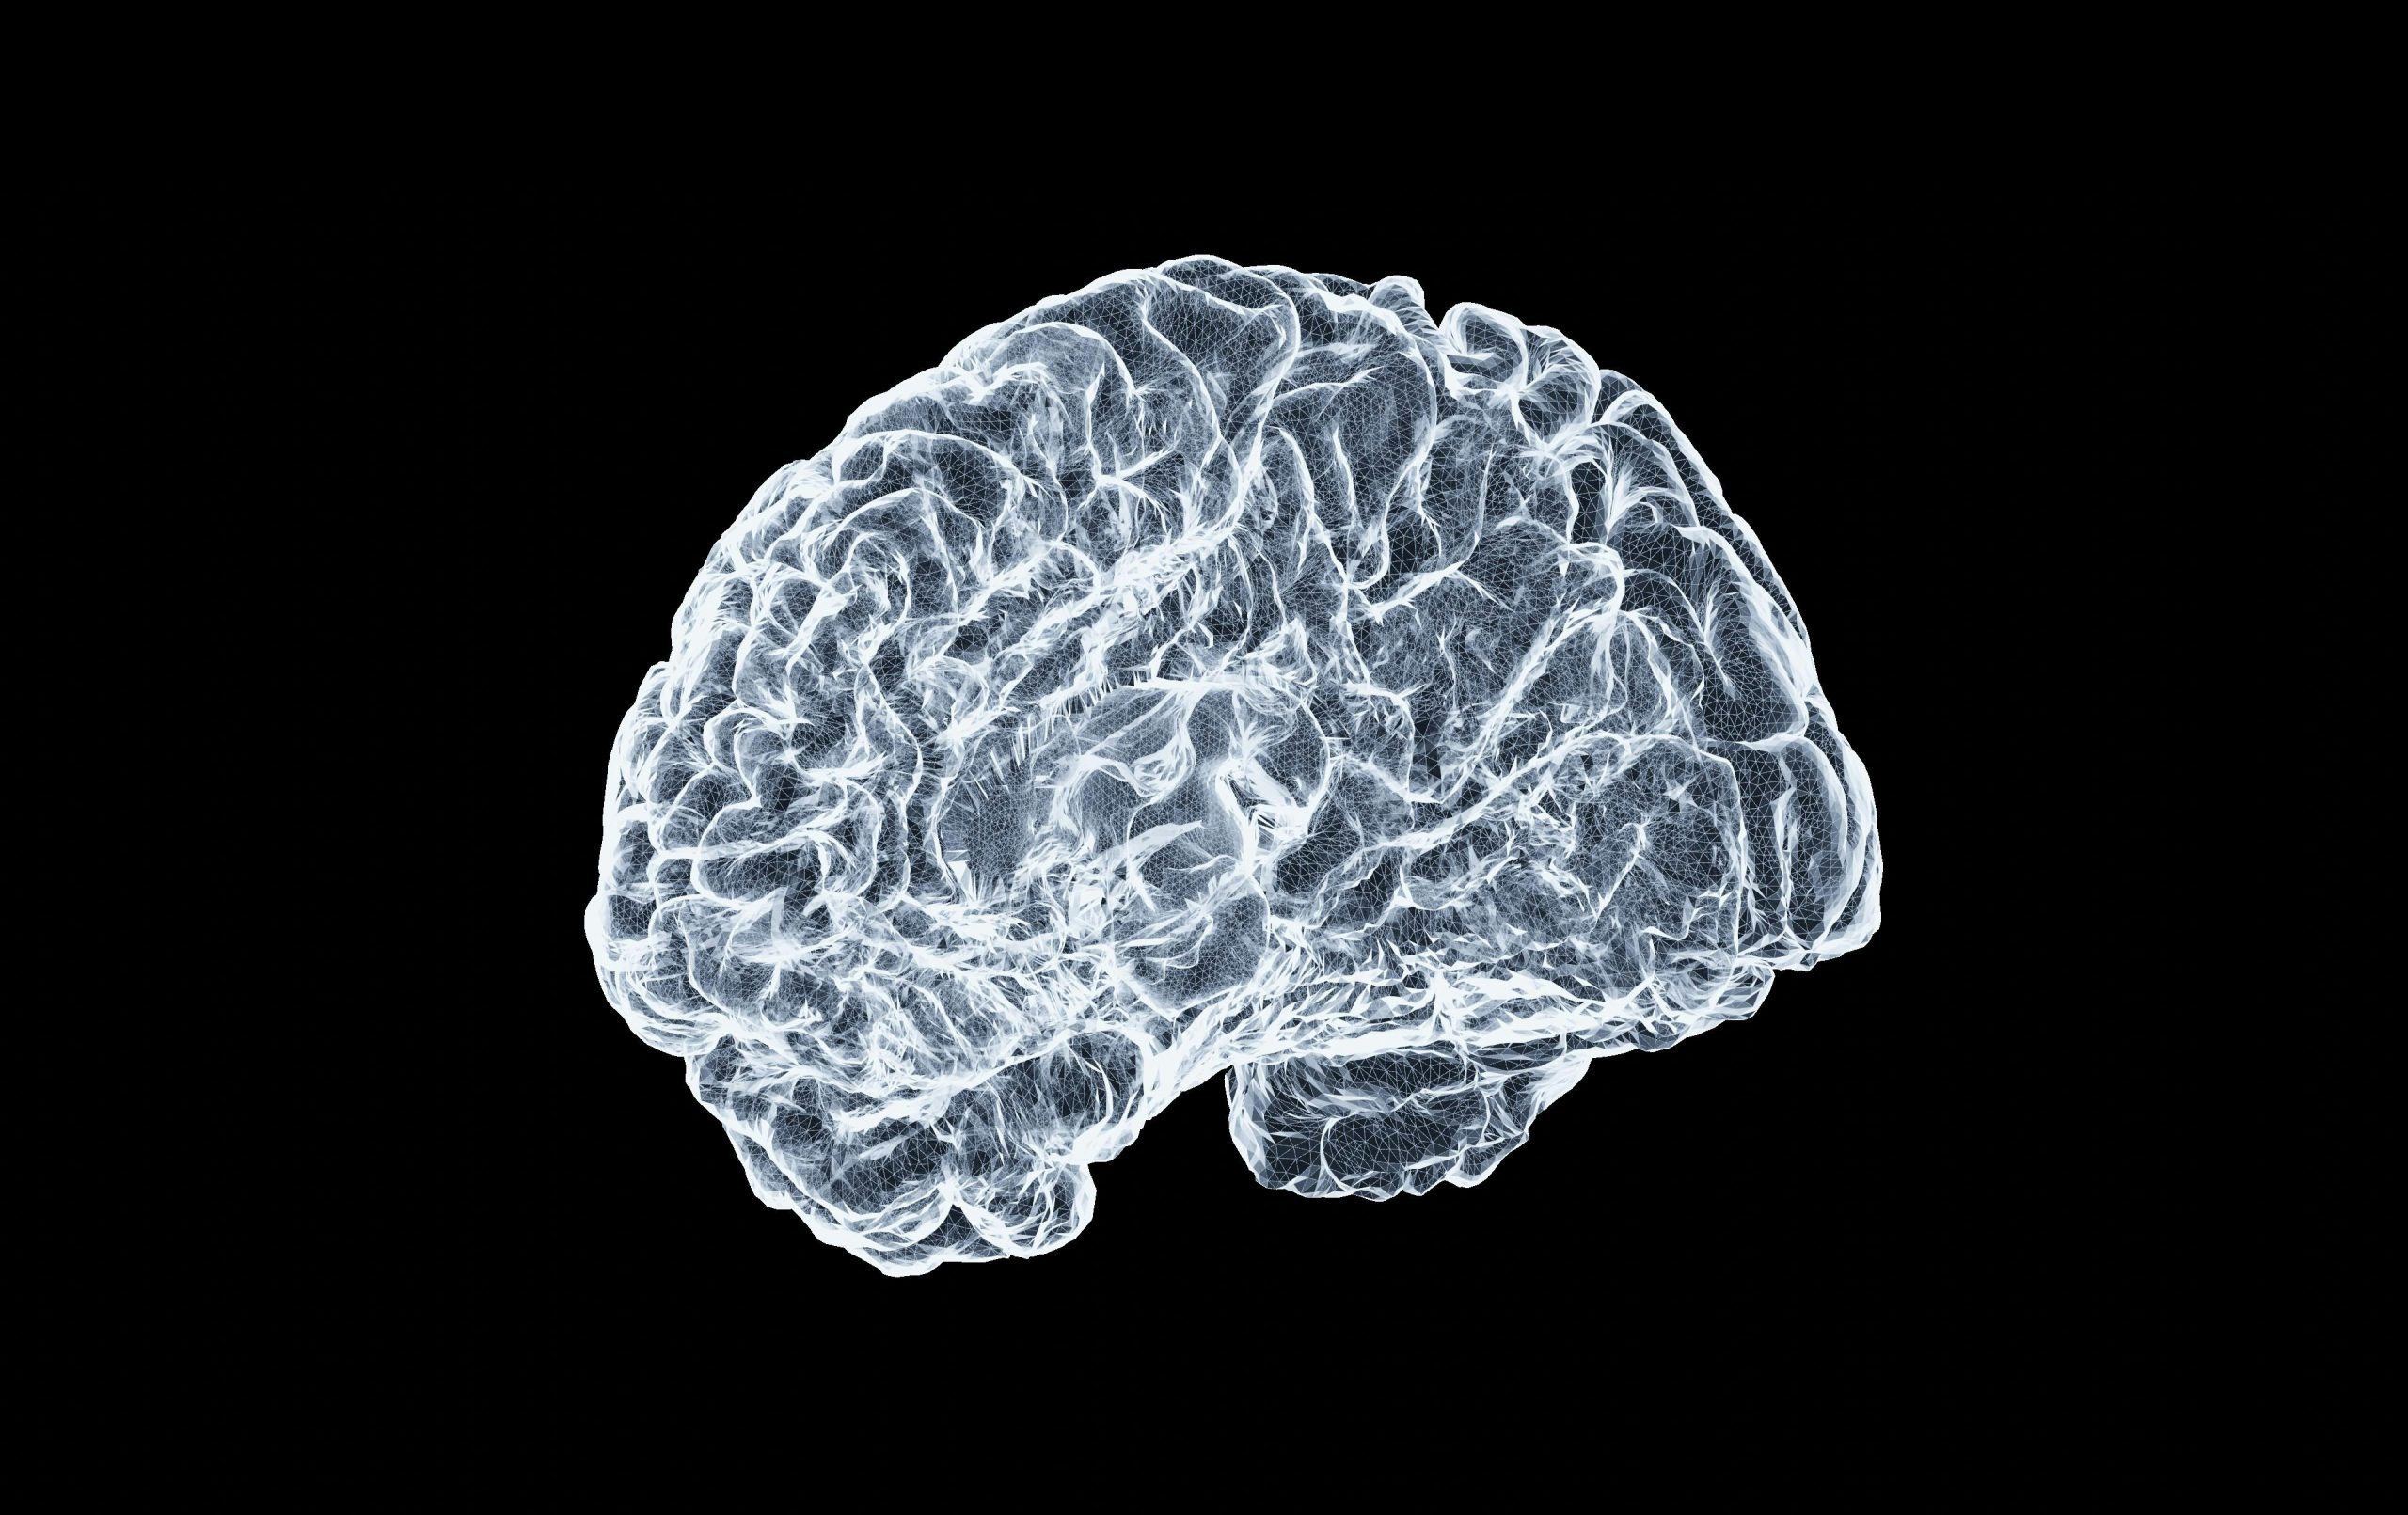 Der Scan eines Hirns in weiß auf schwarzem Hintergrund.